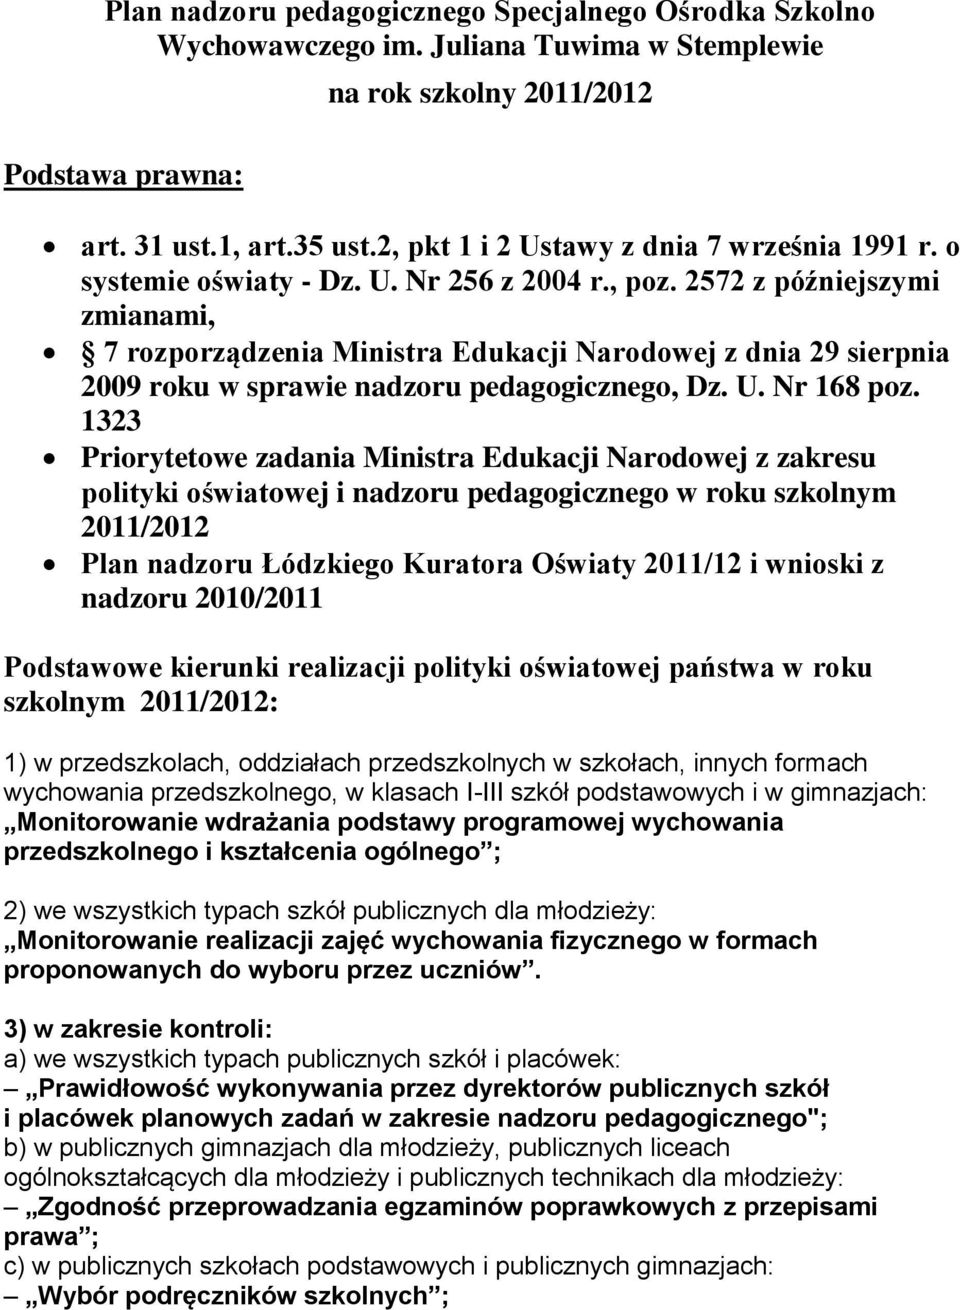 2572 z późniejszymi zmianami, 7 rozporządzenia Ministra Edukacji Narodowej z dnia 29 sierpnia 2009 roku w sprawie nadzoru pedagogicznego, Dz. U. Nr 168 poz.